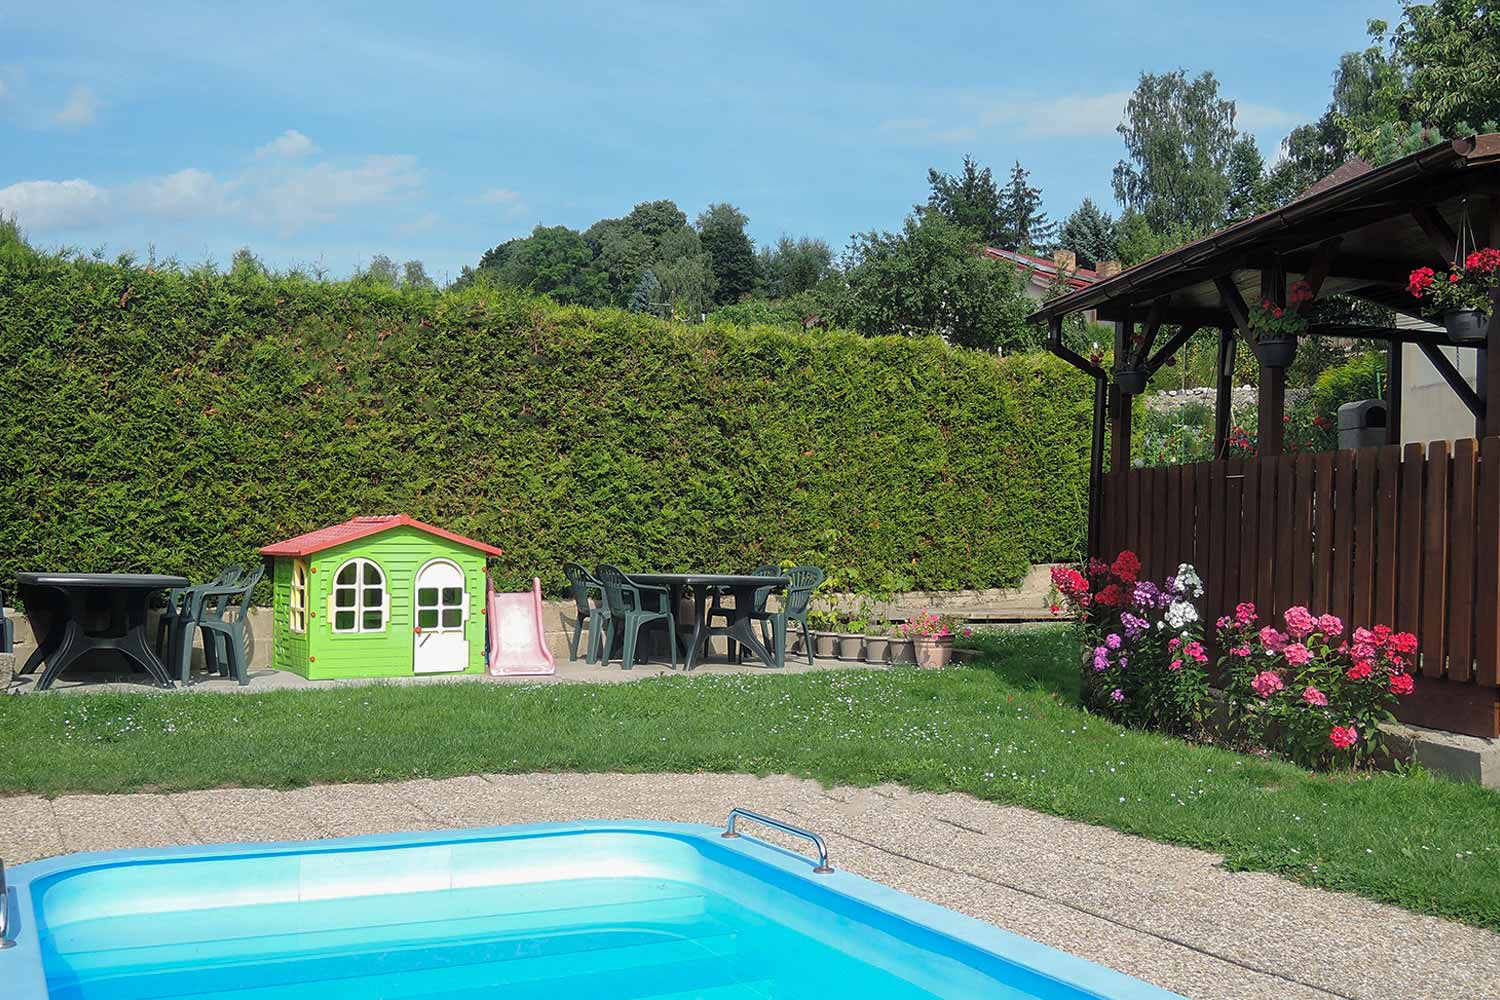 Zahrada s bazénem, dětským koutkem a pergolou